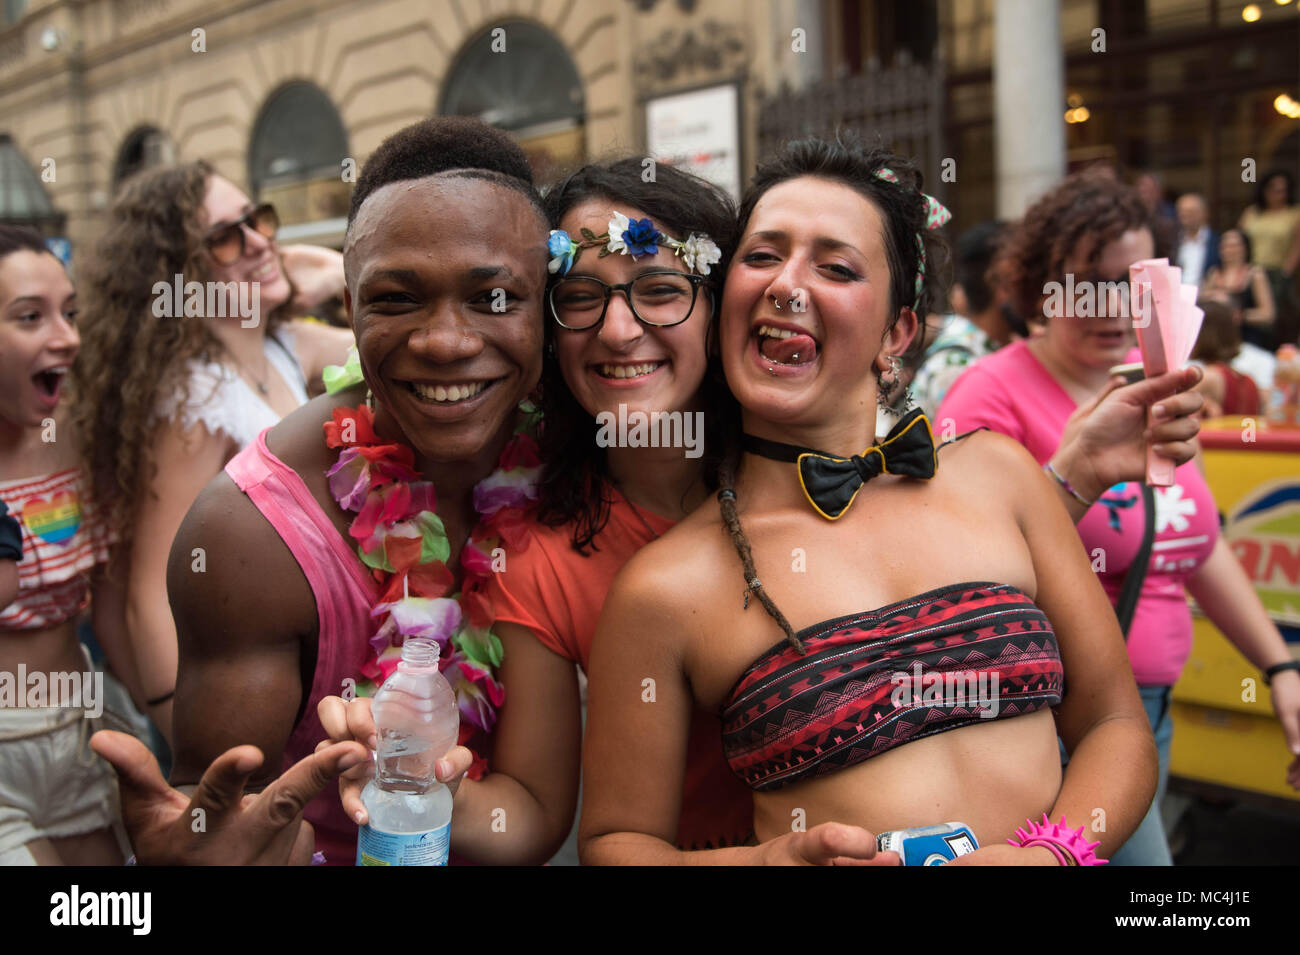 La fierté de Palerme, le grand gay pride dans la région méditerranéenne Banque D'Images